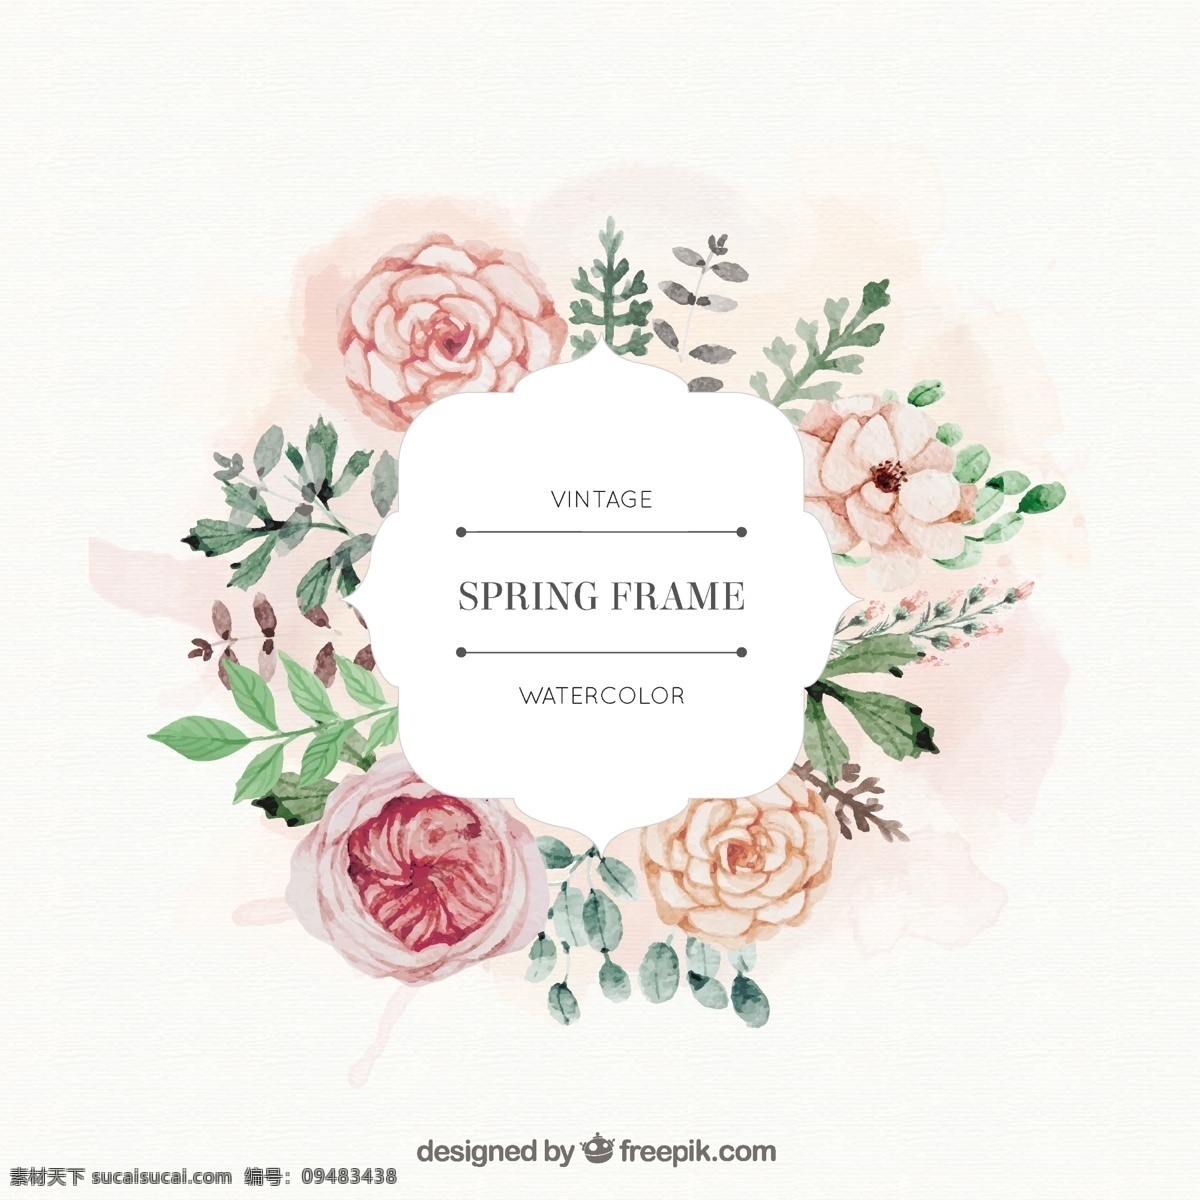 水彩 玫瑰 树叶 弹簧 架 框 花 水彩画 手 装饰 自然 叶 春 艺术 可爱 植物 白色